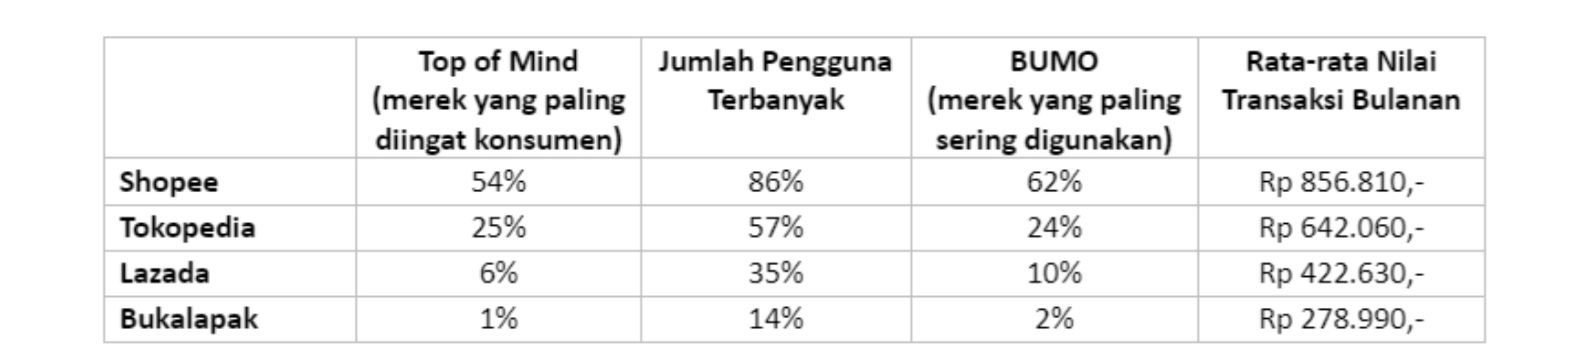 Tabel Pangsa Pasar Pengguna E-Commerce di Indonesia